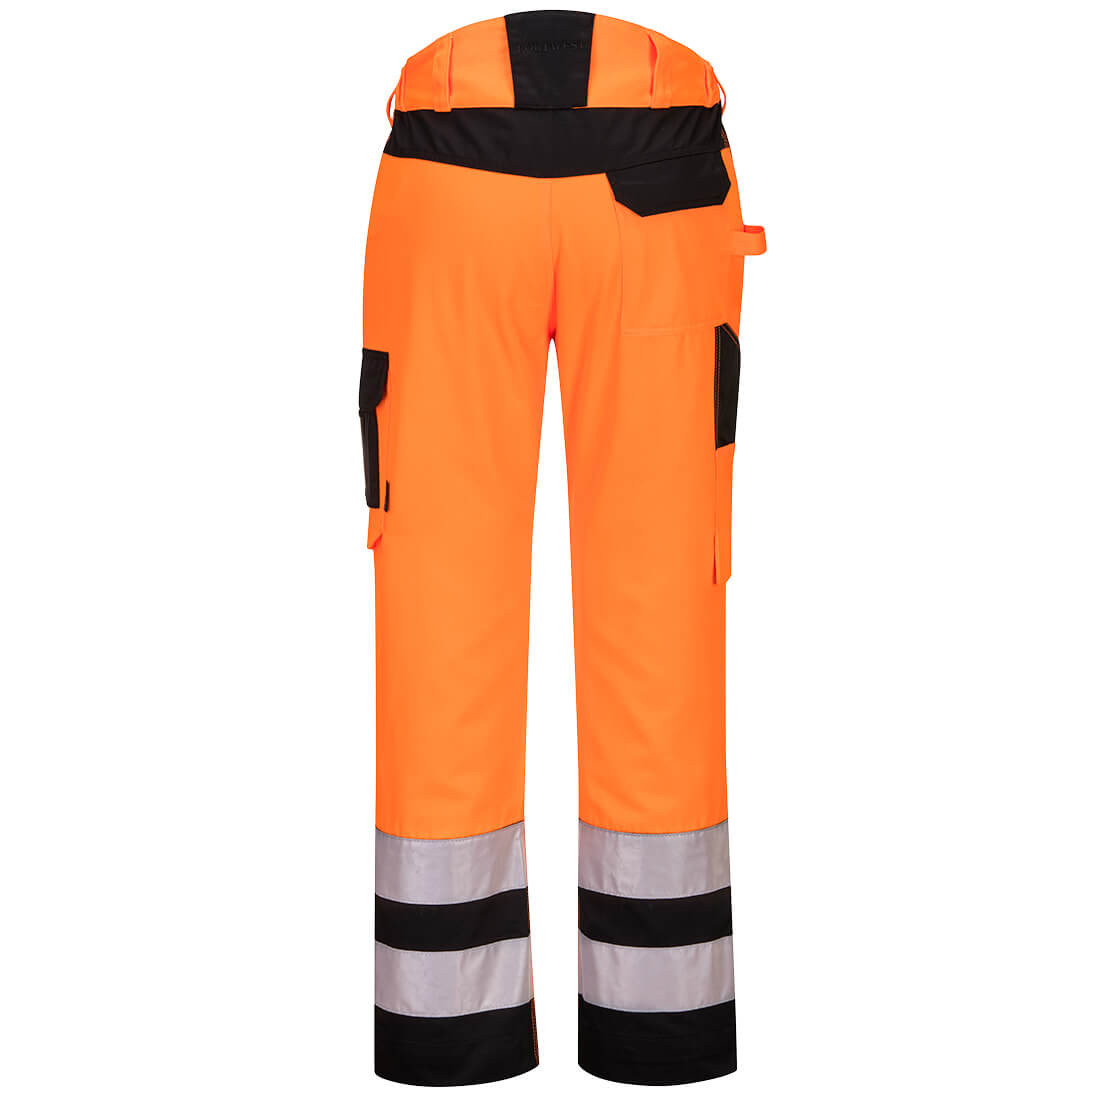 Pantalón PW2 Service de alta visibilidad - Ropa de protección